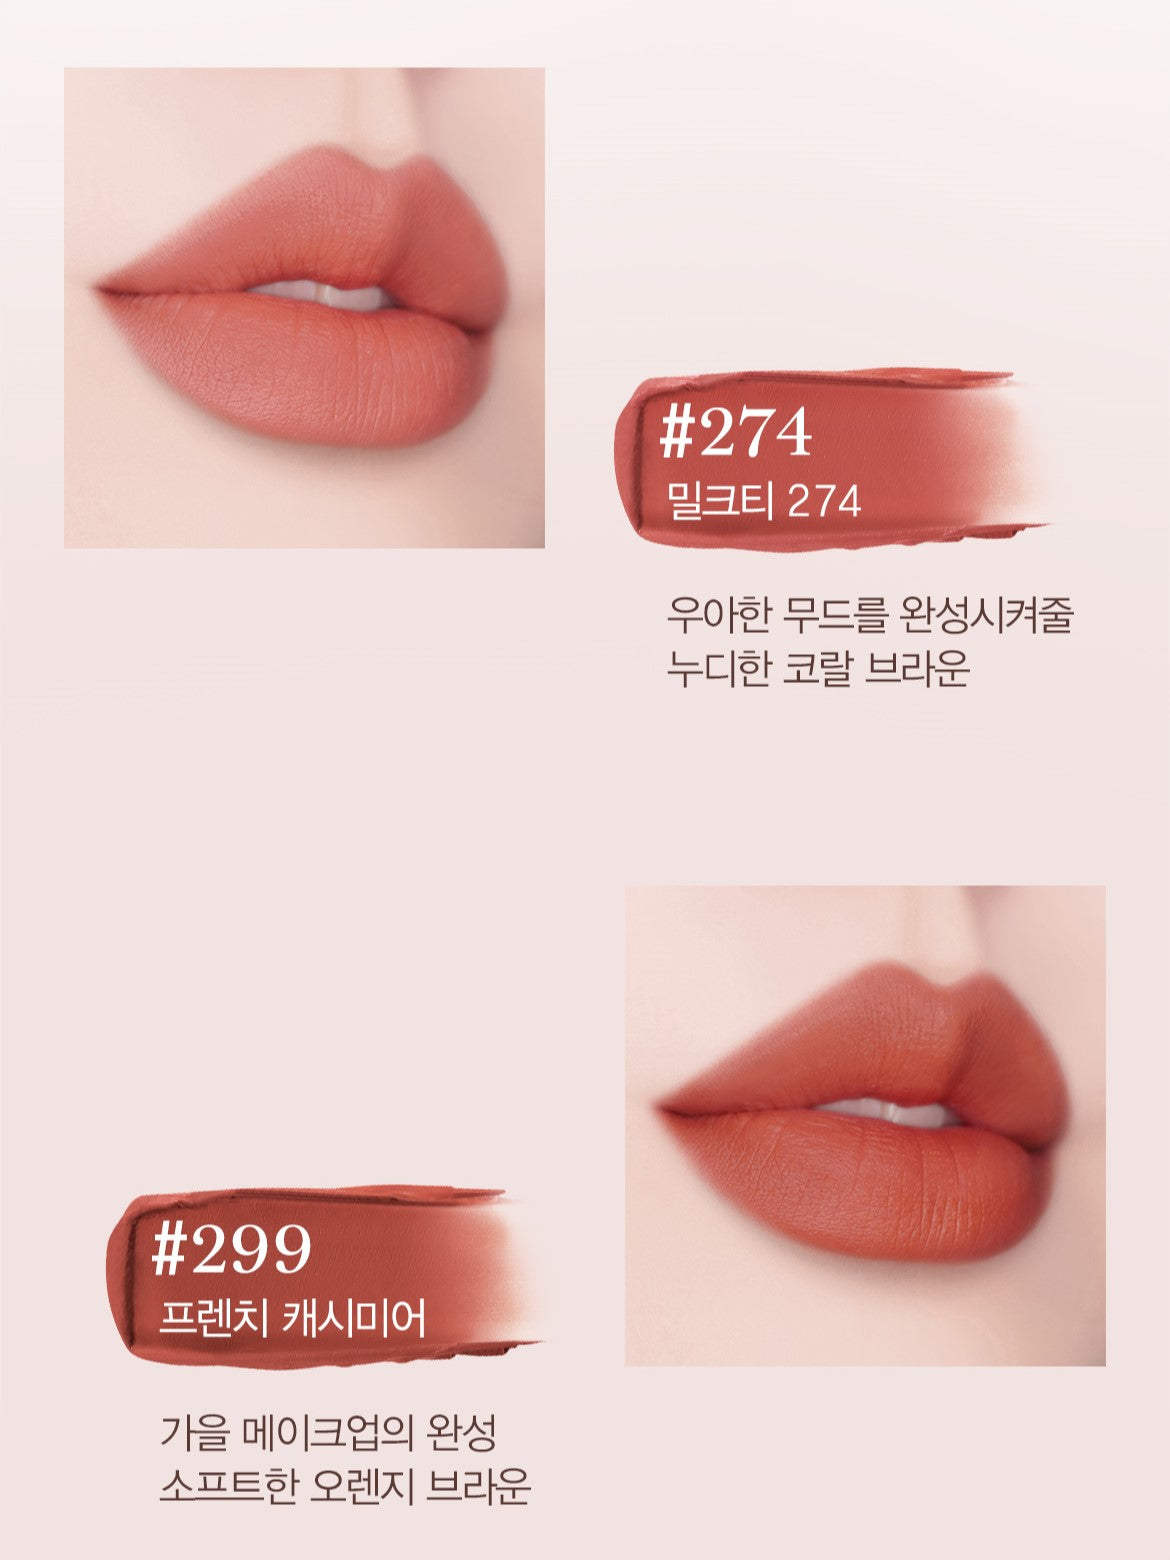 Son LANCÔME L'Absolu Rouge Intimatte Lipstick #220 French Blush